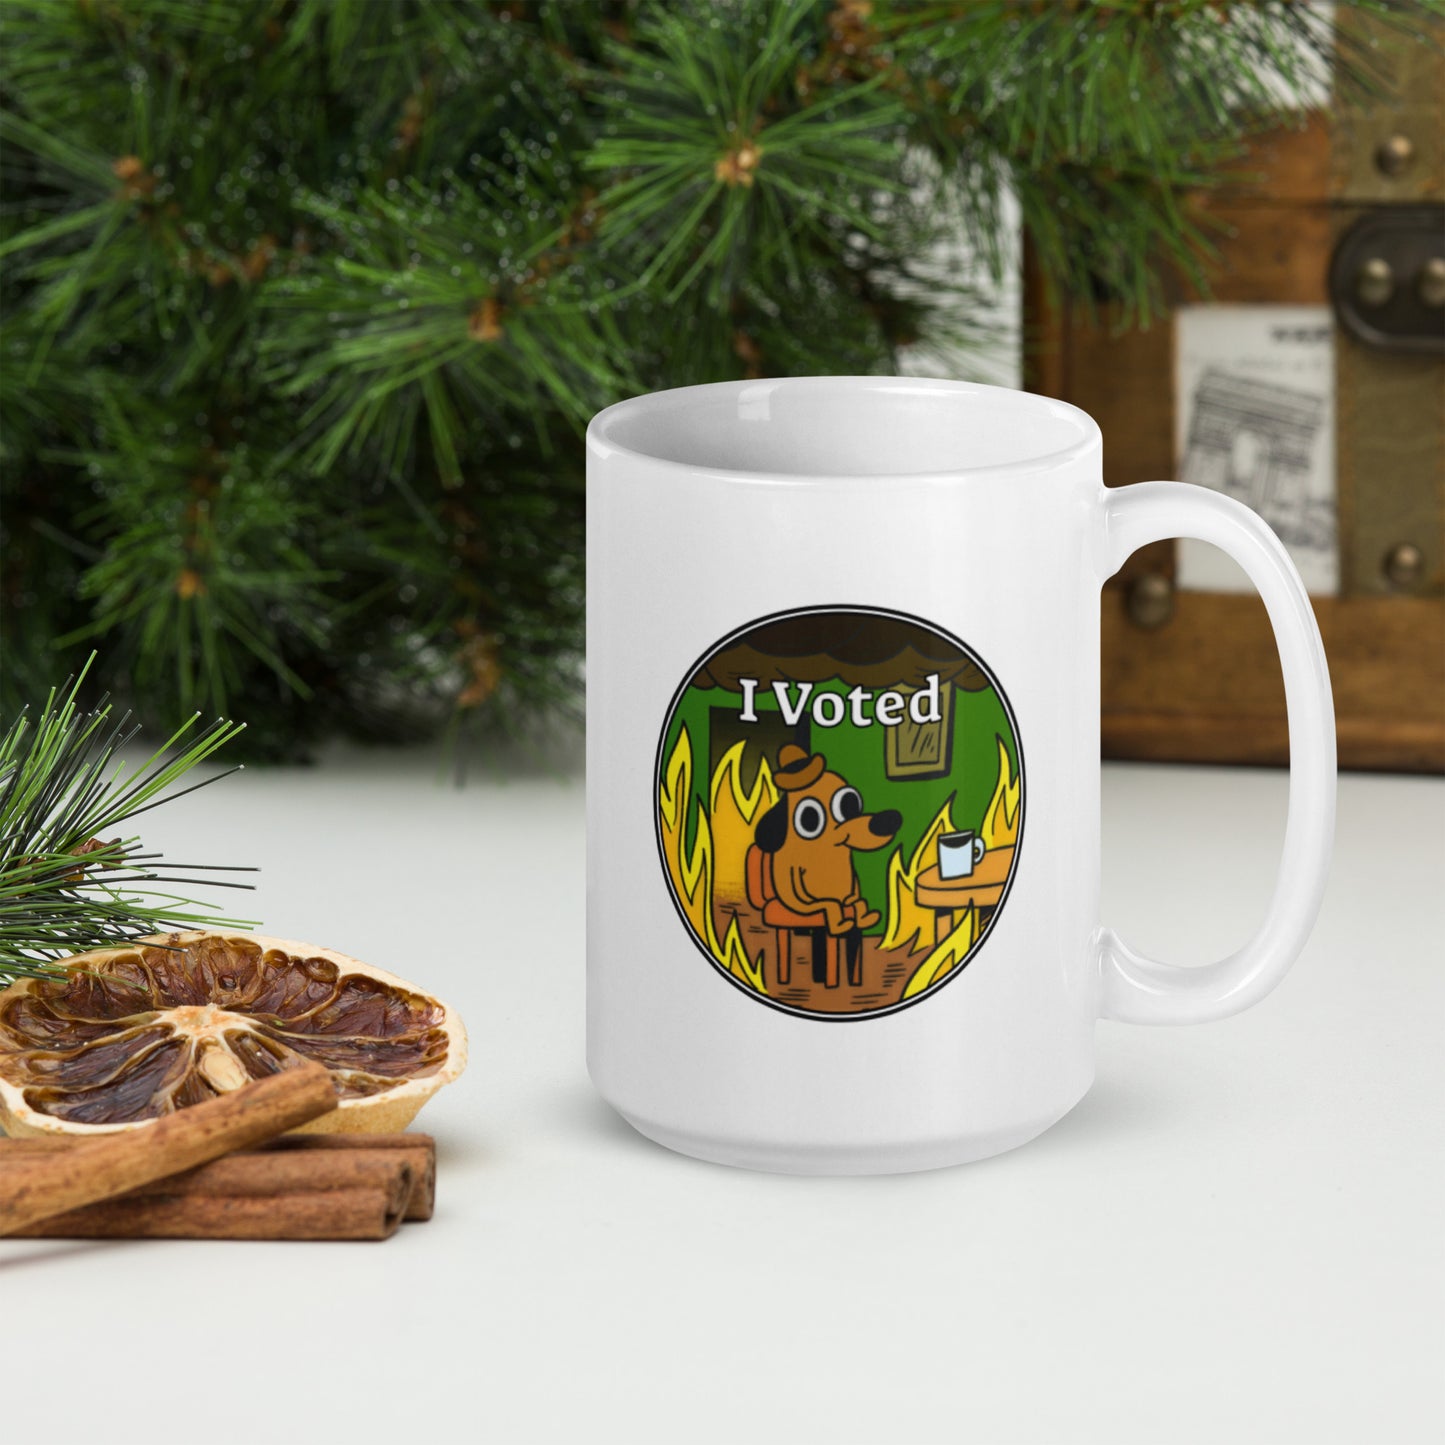 I Voted Mug